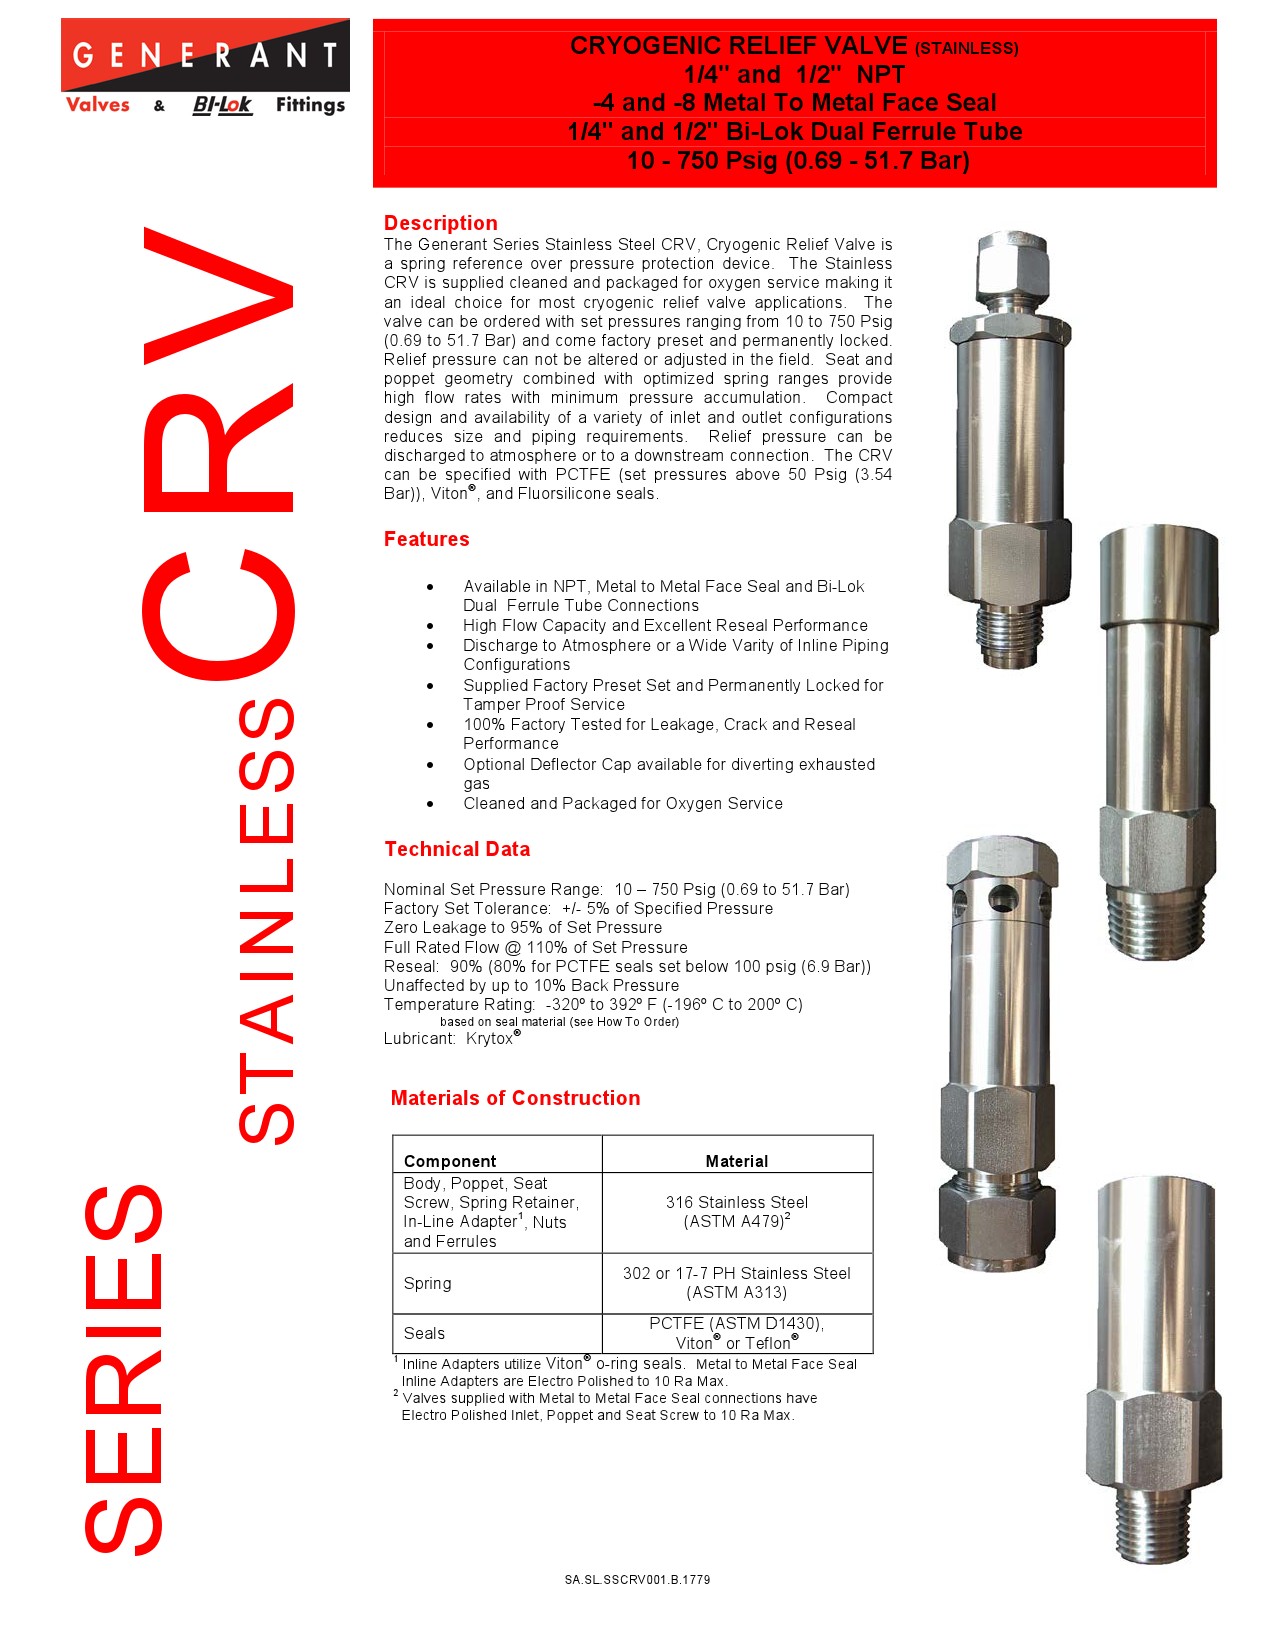 안전밸브 Generant CRV 자료-1.jpg